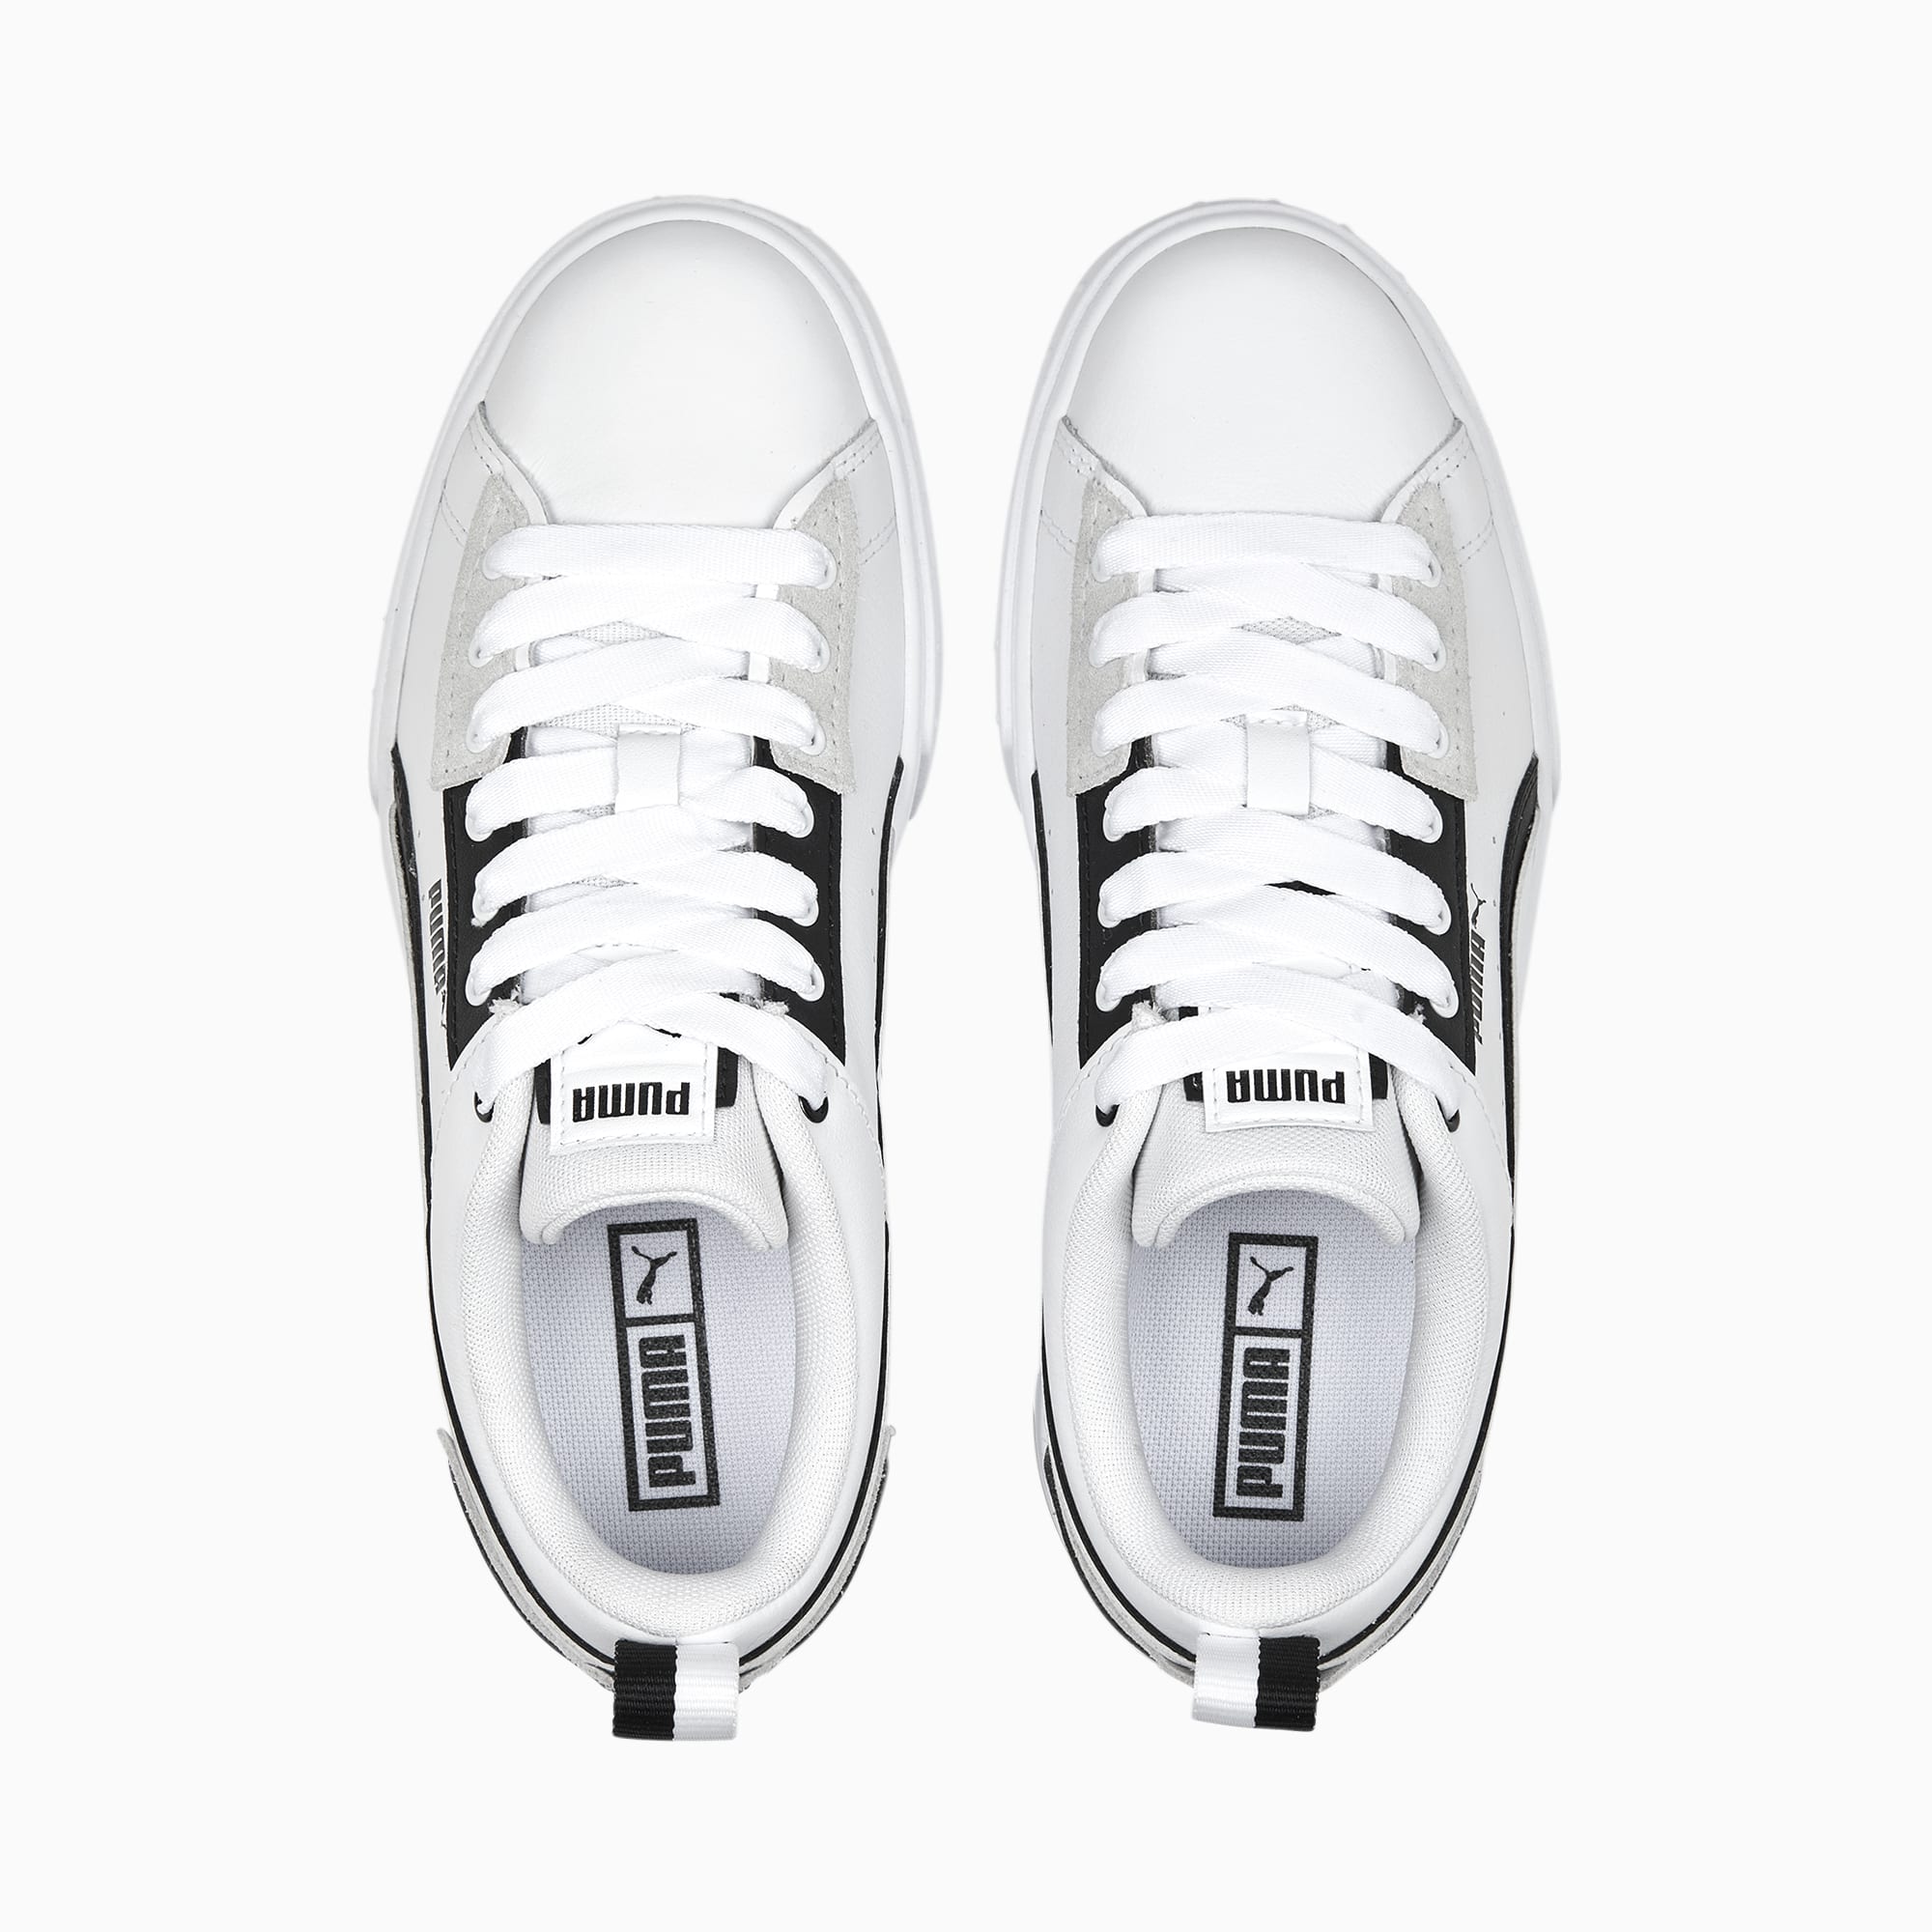 Puma - Smash v2 Vulc SL 367308-02 - Sneakers - White / Black